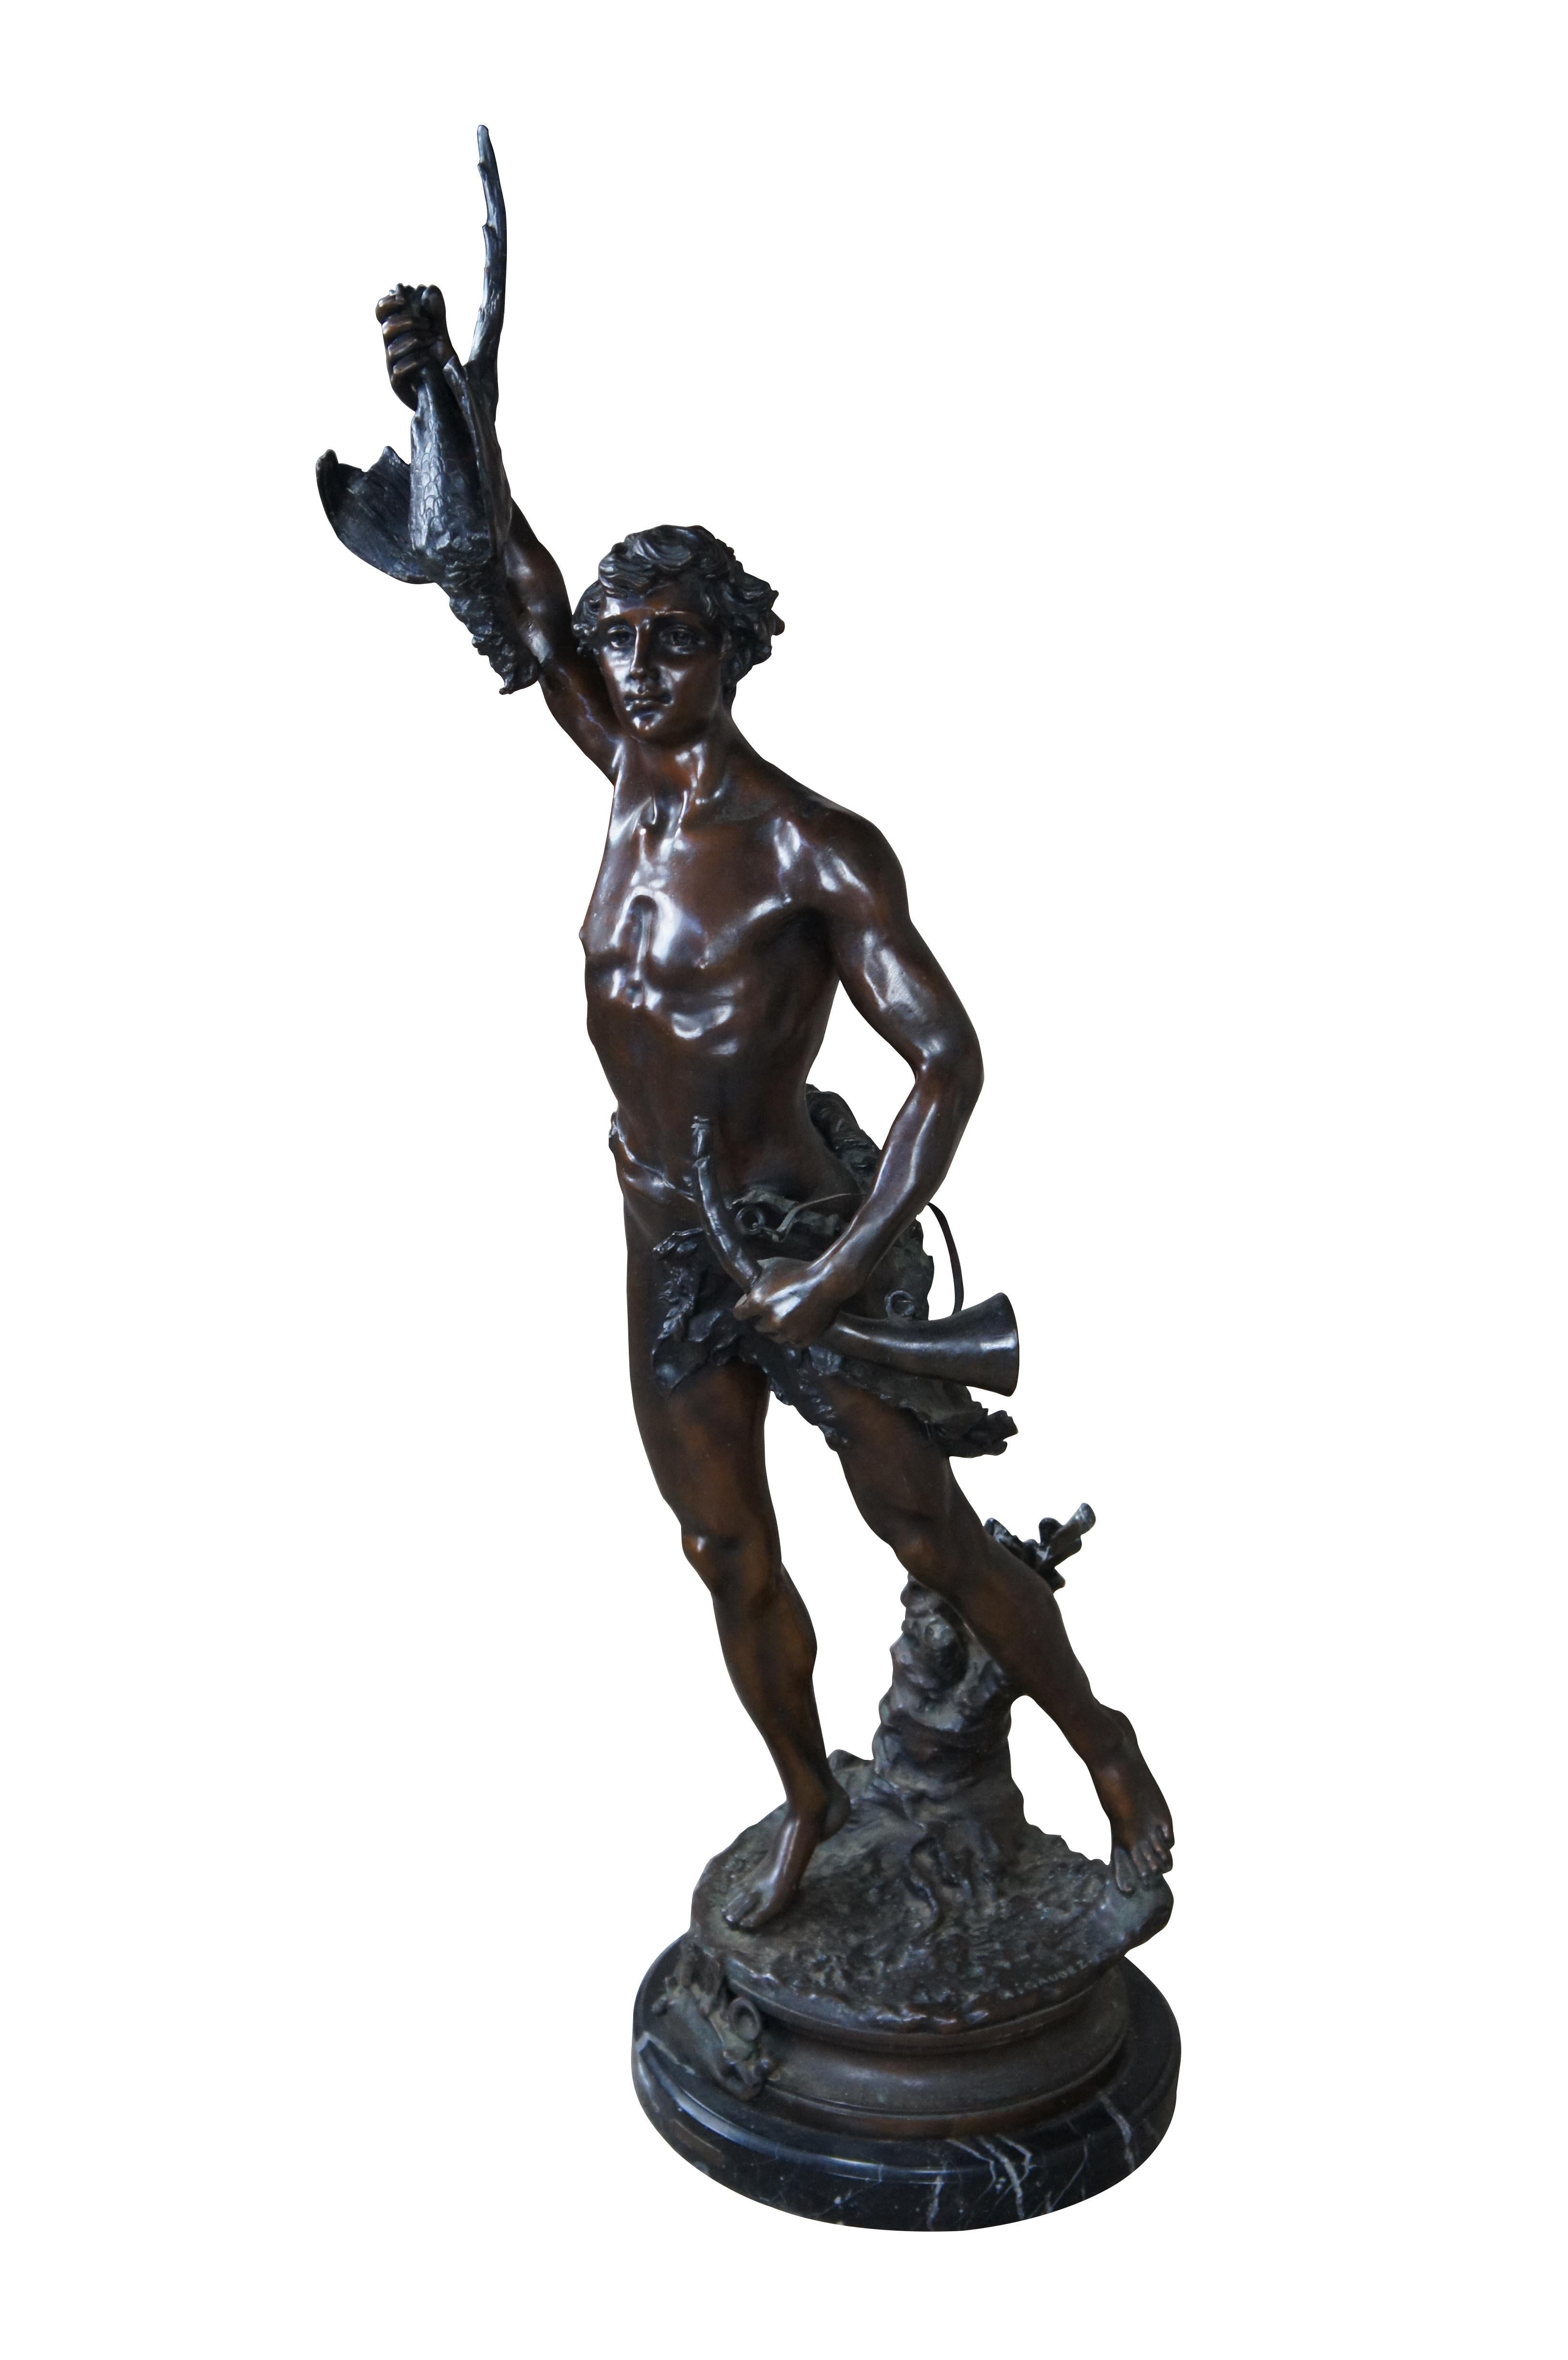 Eine bemerkenswerte französische Bronzeskulptur des Acteon von Adrein Etienne Gaudez. Die Statue ist naturgetreu nachgebildet und zeigt Acteon mit einem Vogel in seinem ausgestreckten Arm, der auf einem Bein steht und ein Horn im anderen Arm hält.